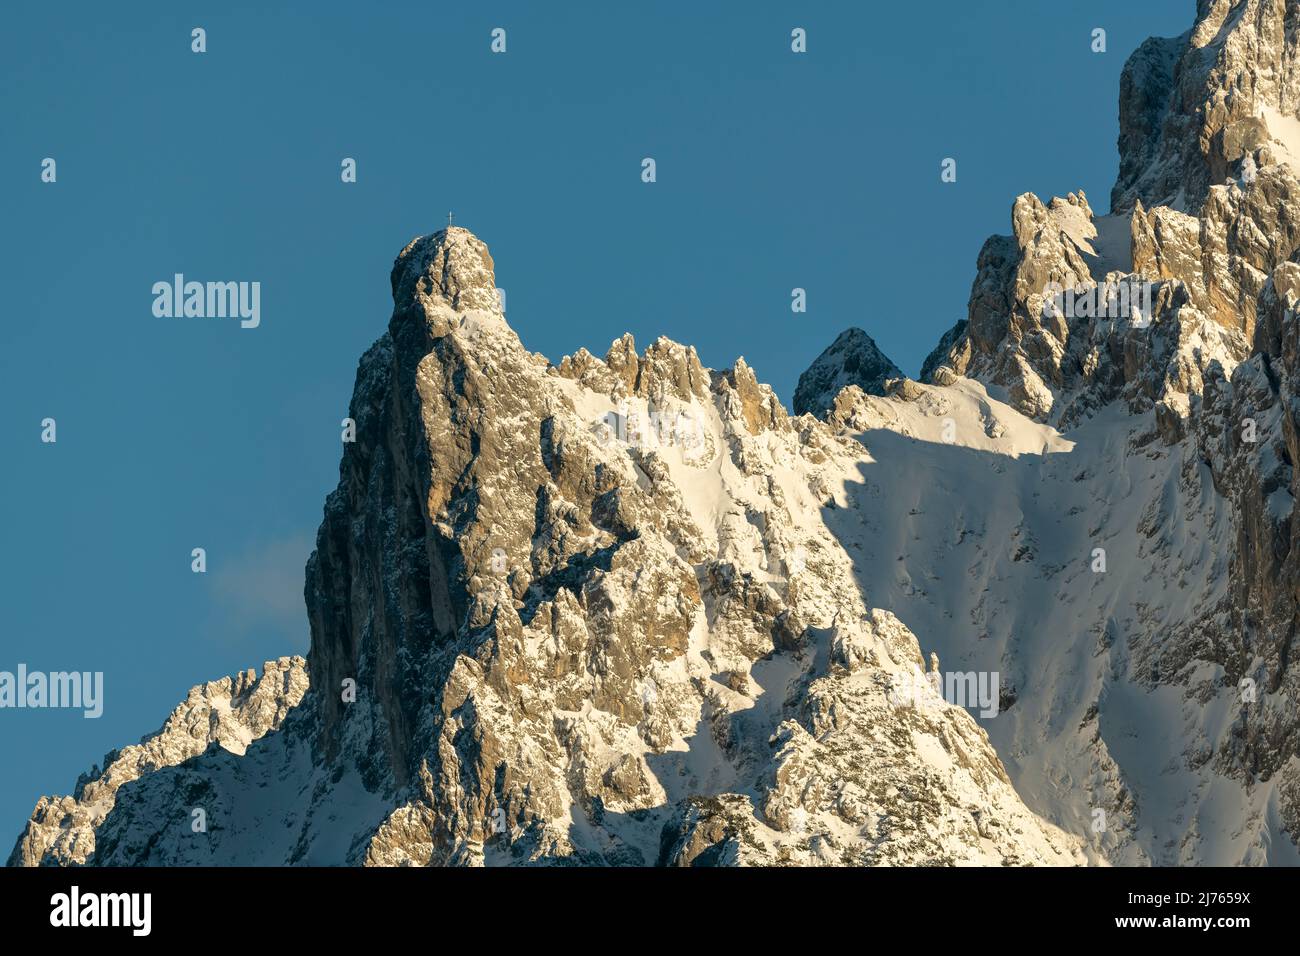 Die Viererspitze (2054 m ü.d.M.) oberhalb von Mittenwald, unterhalb der westlichen Karwendelspitze, im Winter als Teil des nördlichen Karwendel-Gebirges bei Schnee und Eis, vor blauem Himmel. Stockfoto